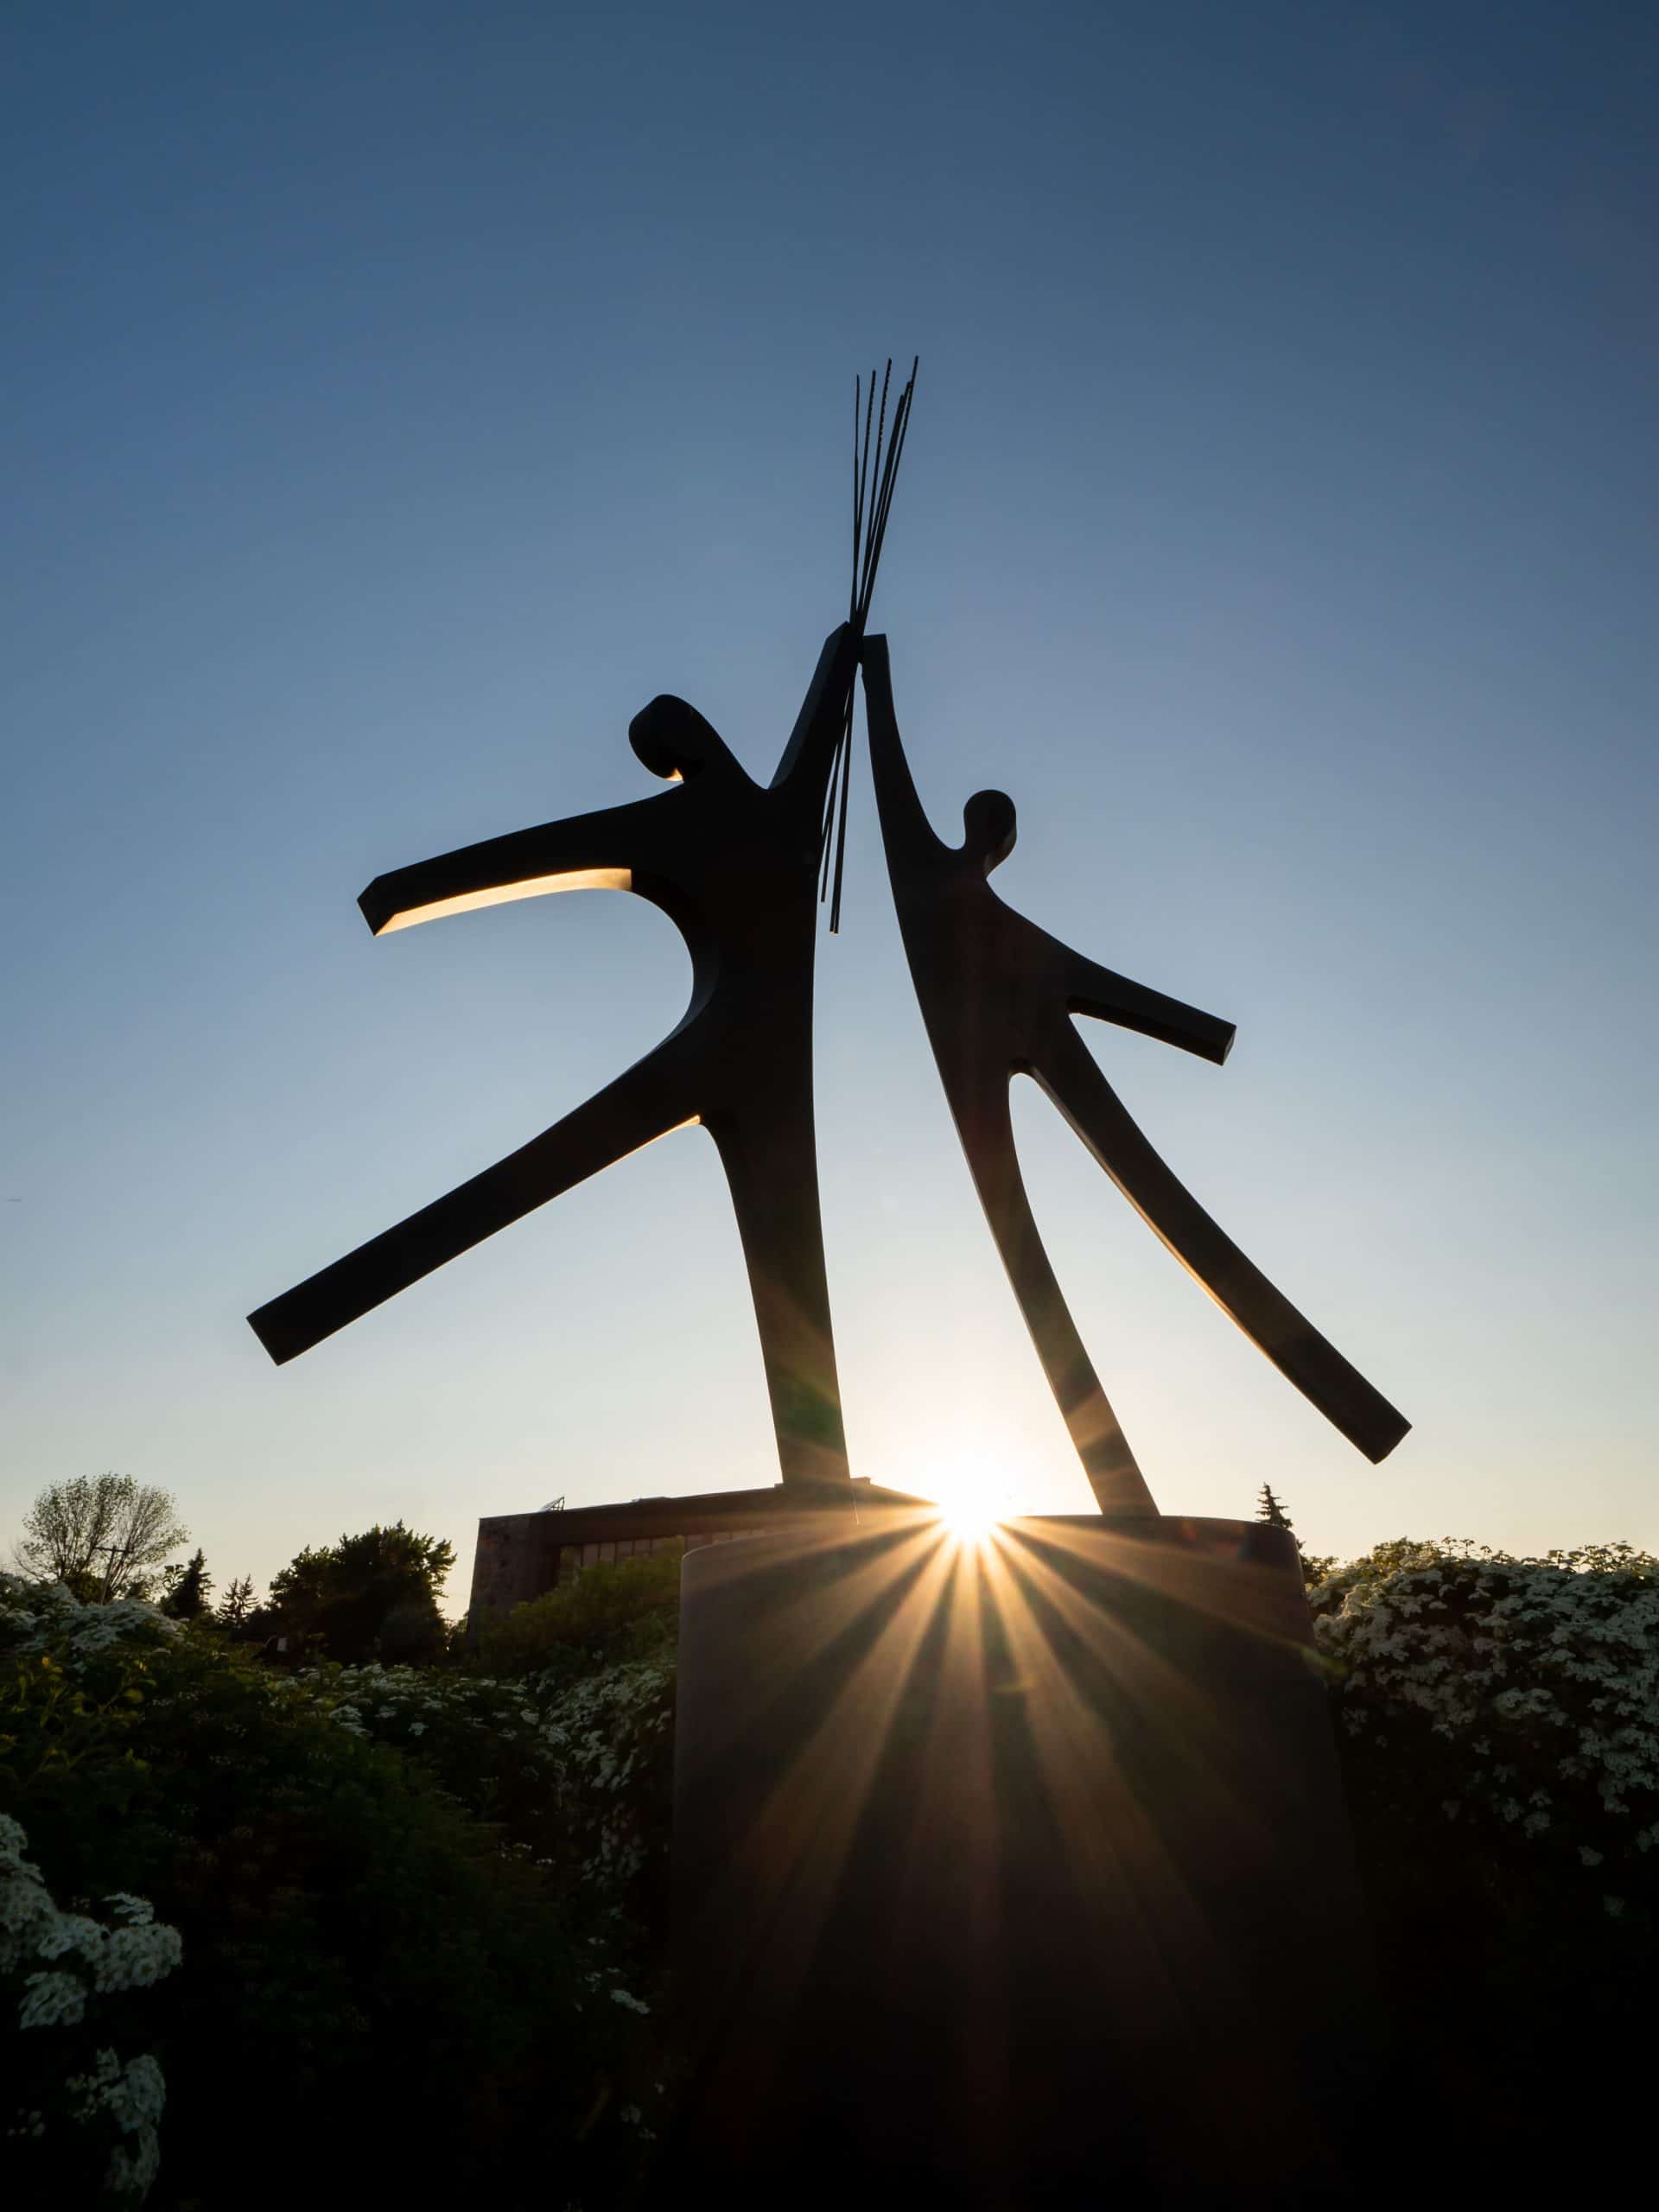 Catalogue d'art public - artiste Jacques Bénard - La Rencontre, sculpture en métal d'un couple tenant une gerbe de blé à bout de bras, vue de près. au coucher du soleil